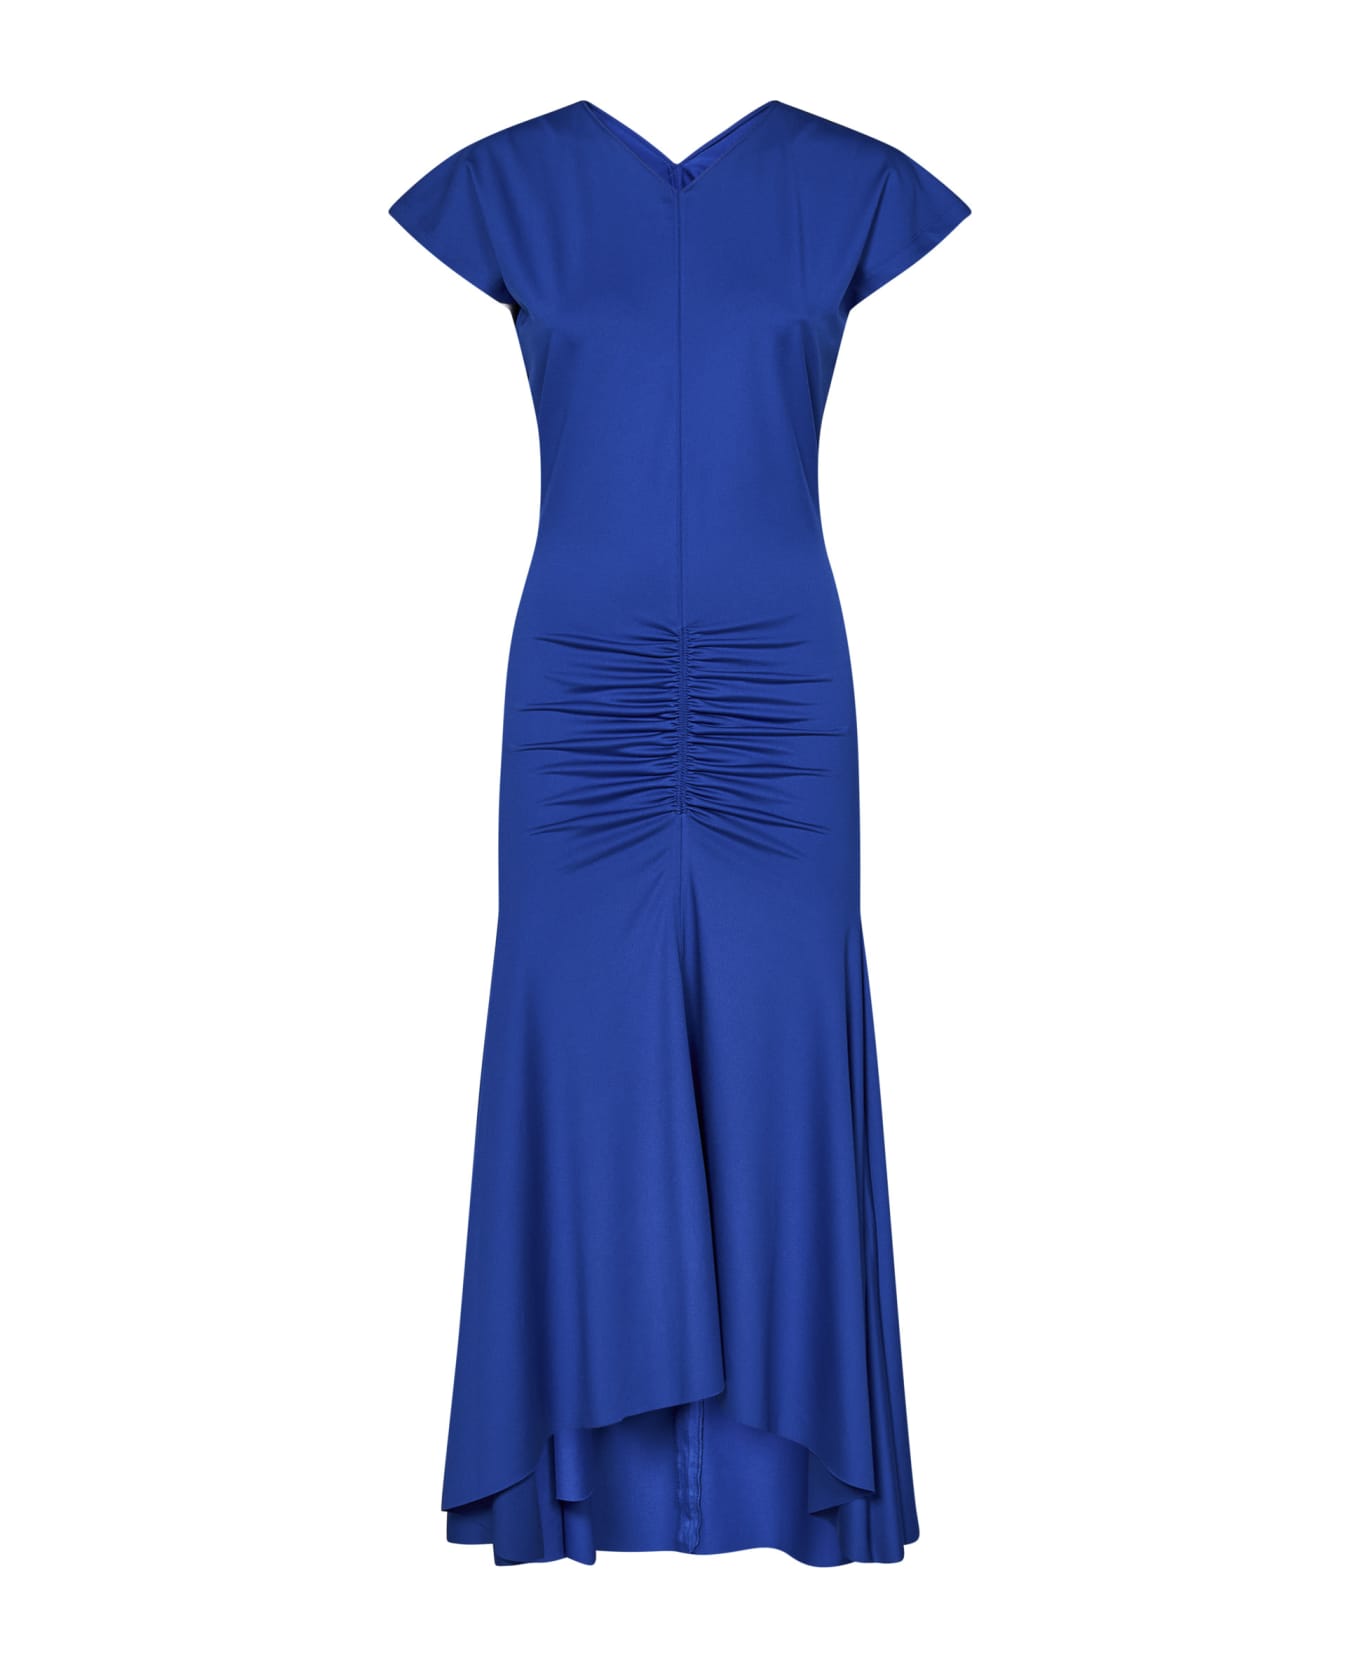 Victoria Beckham Dress - Blue